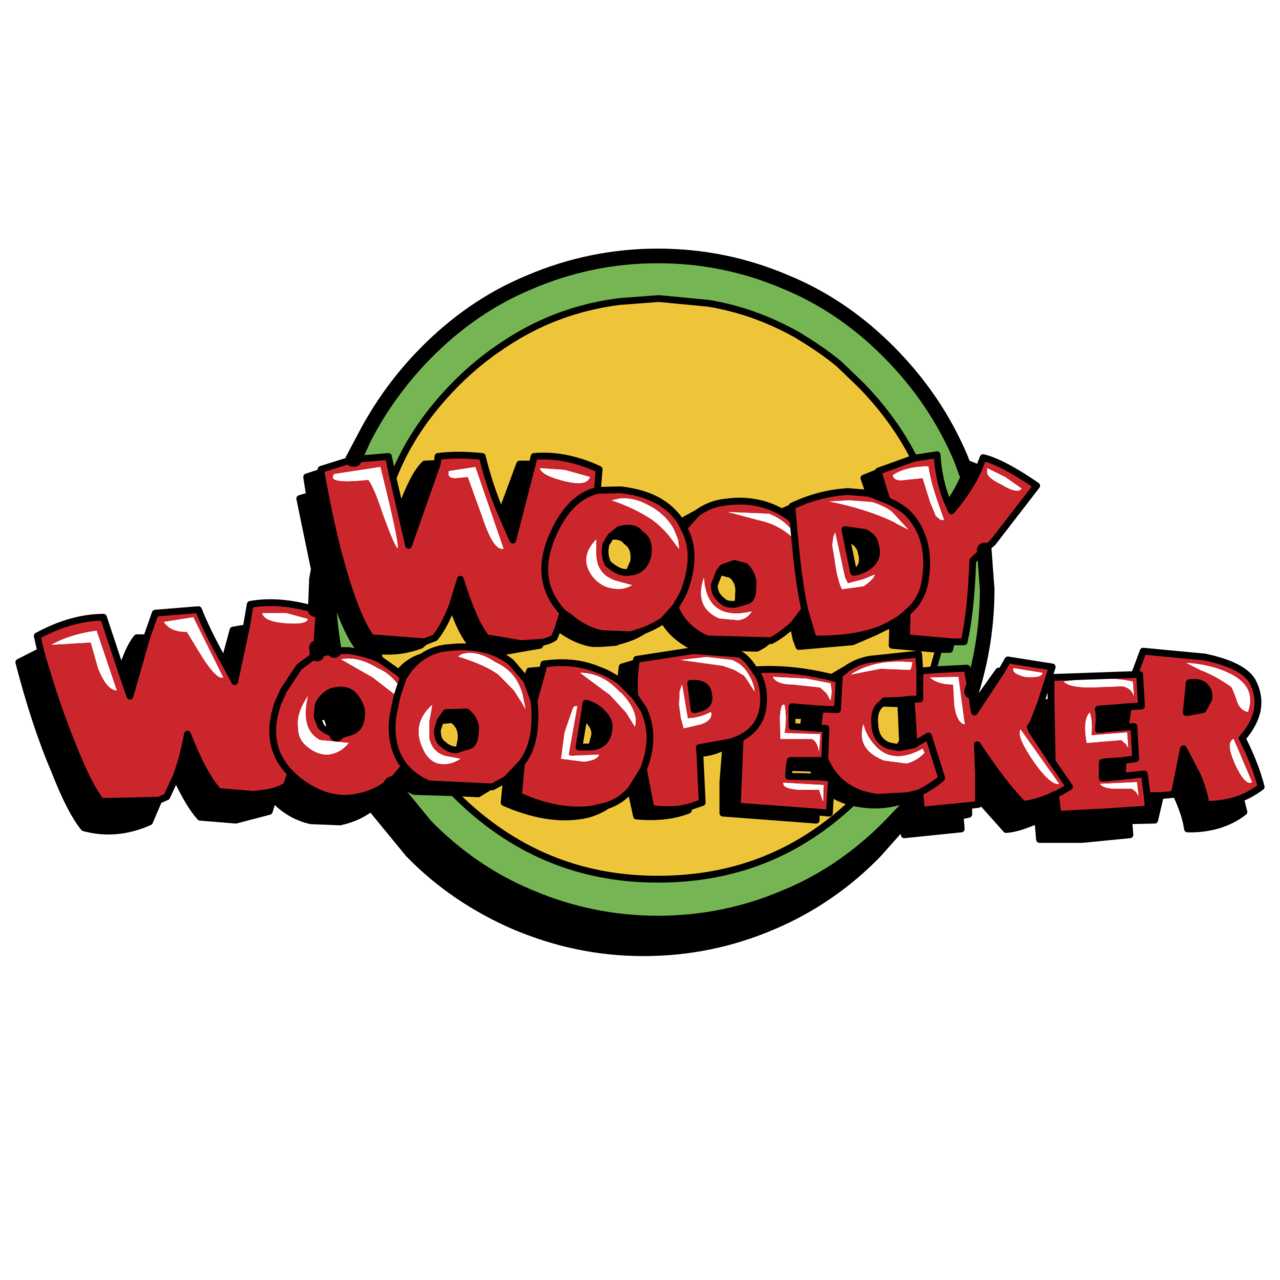 Woody Woodpecker logo.